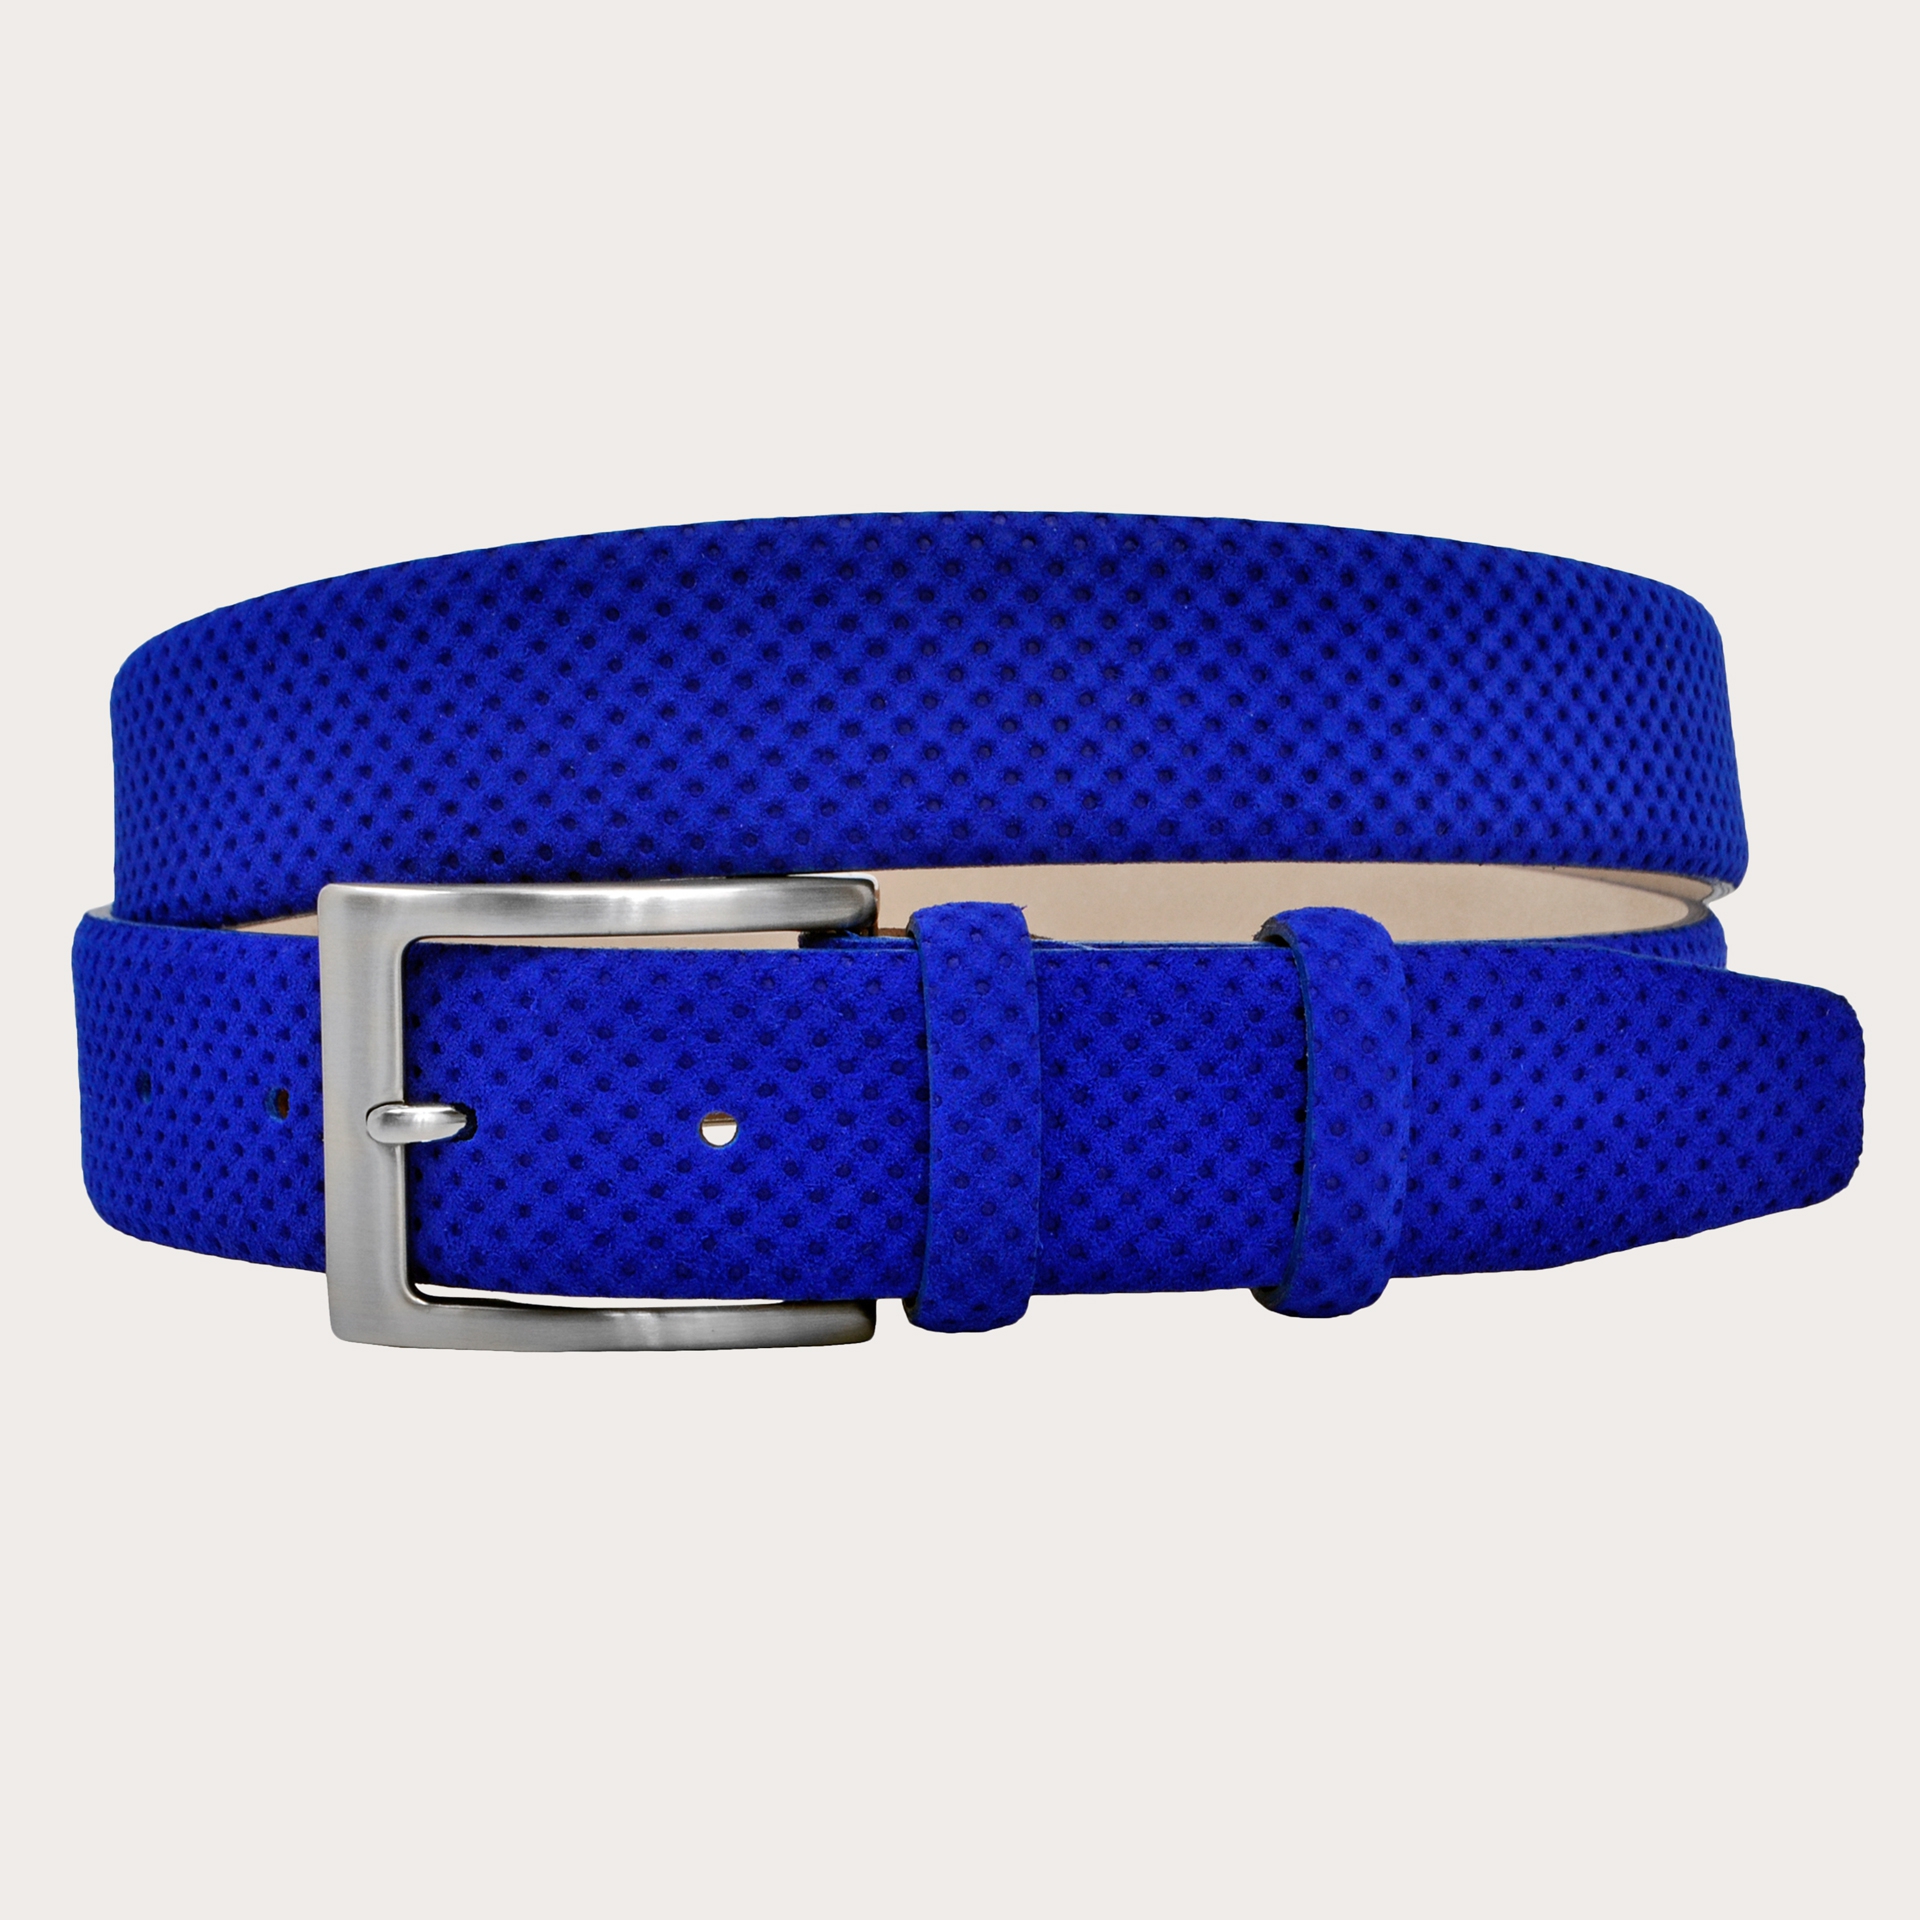 https://www.brucleshop.com/14465-large_default/royal-blue-suede-drilled-pattern-belt.jpg